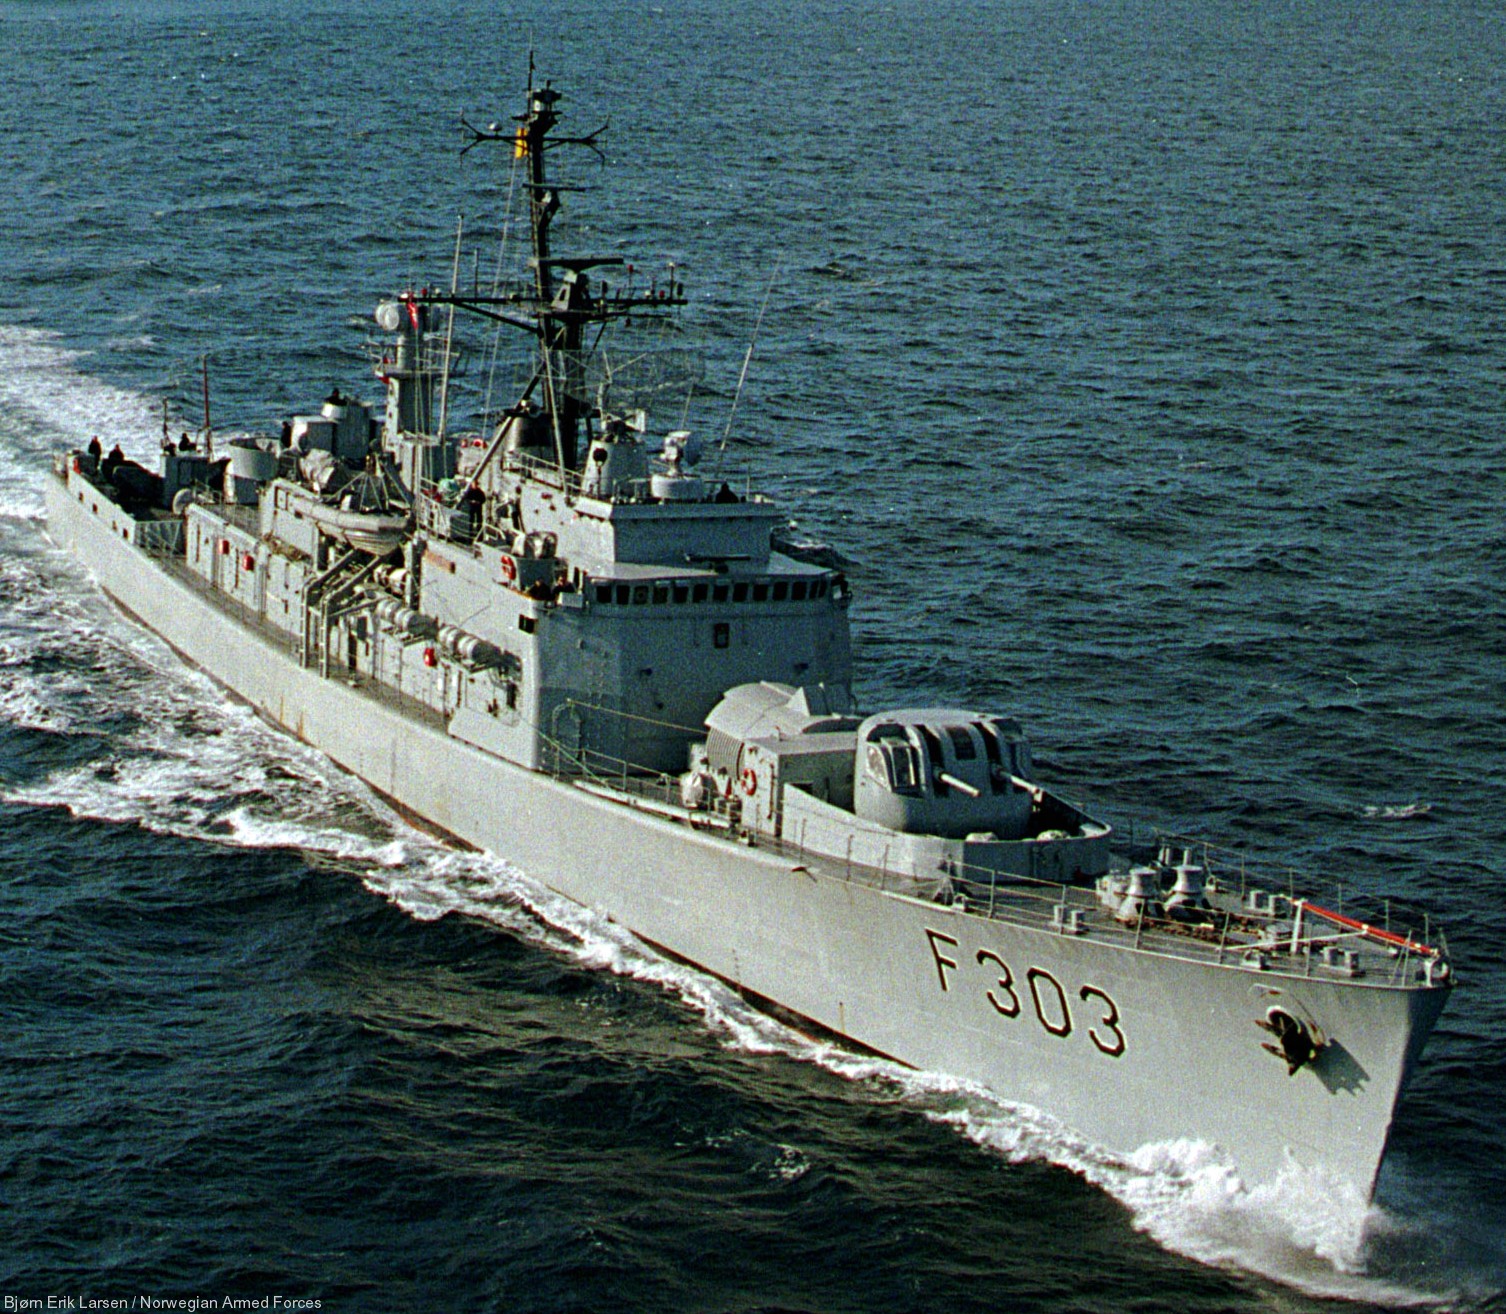 f-303 hnoms stavanger knm oslo class frigate royal norwegian navy sjoforsvaret 09